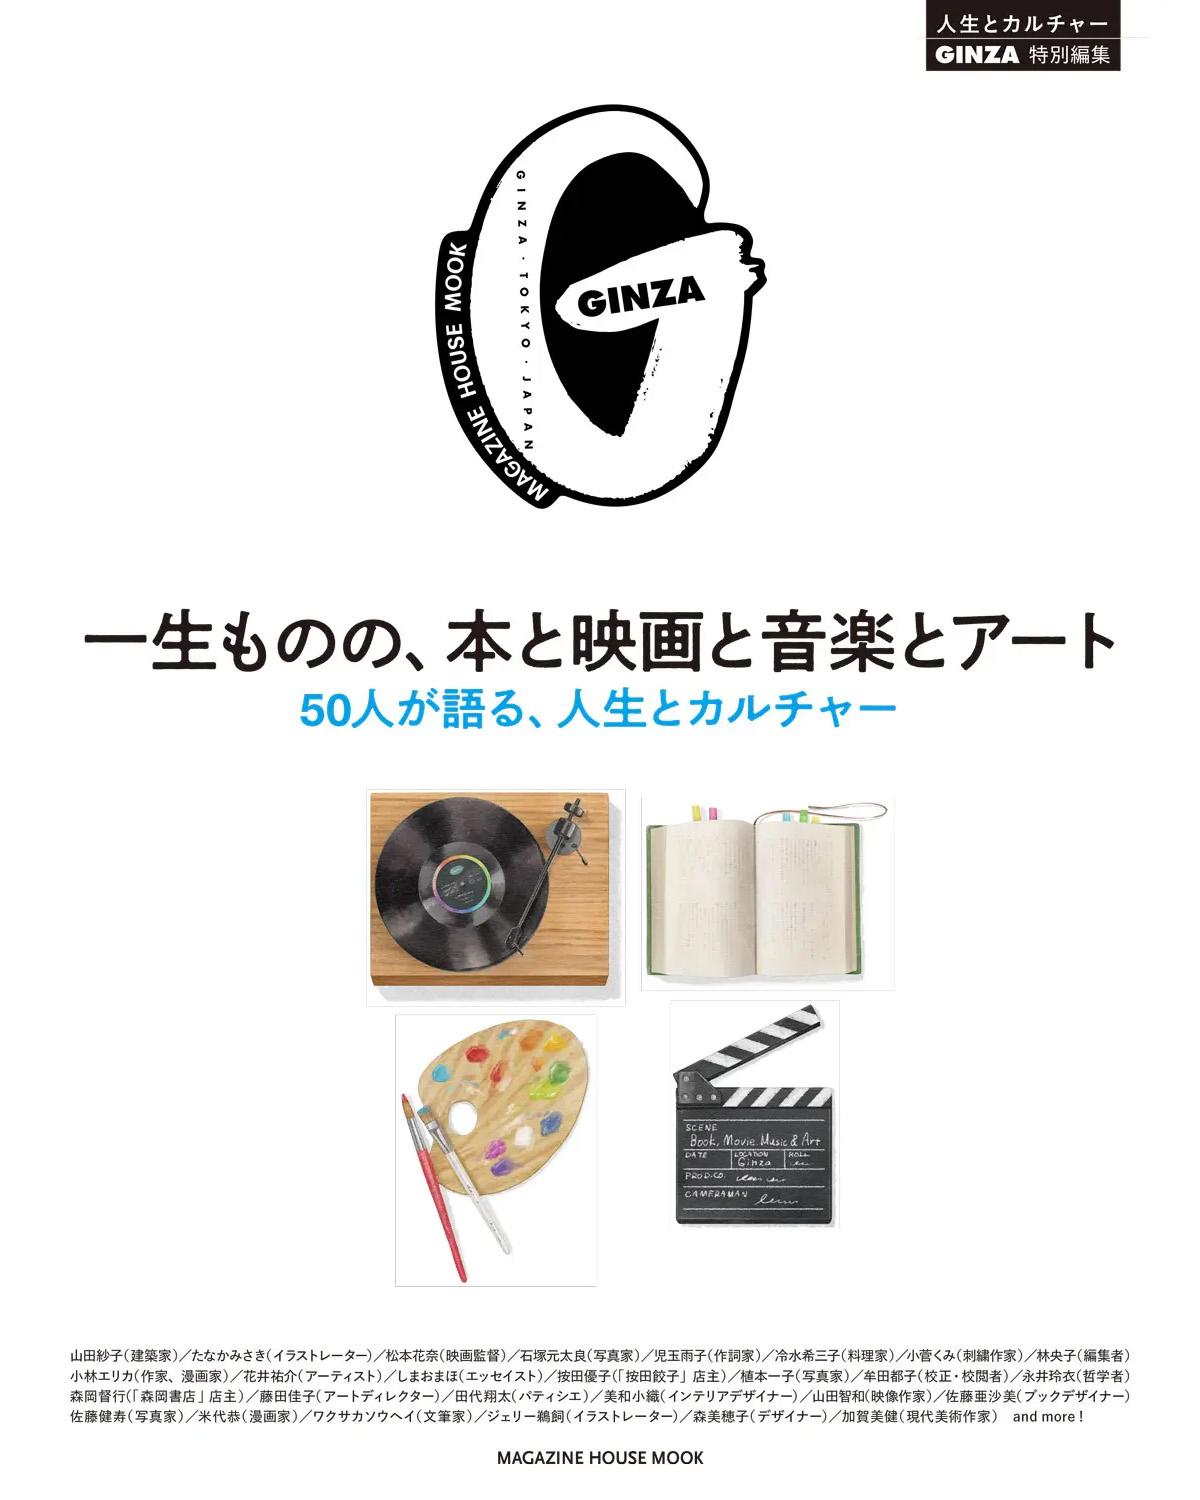 GINZA特別編集ムック『一生ものの、本と映画と音楽とアート』発売